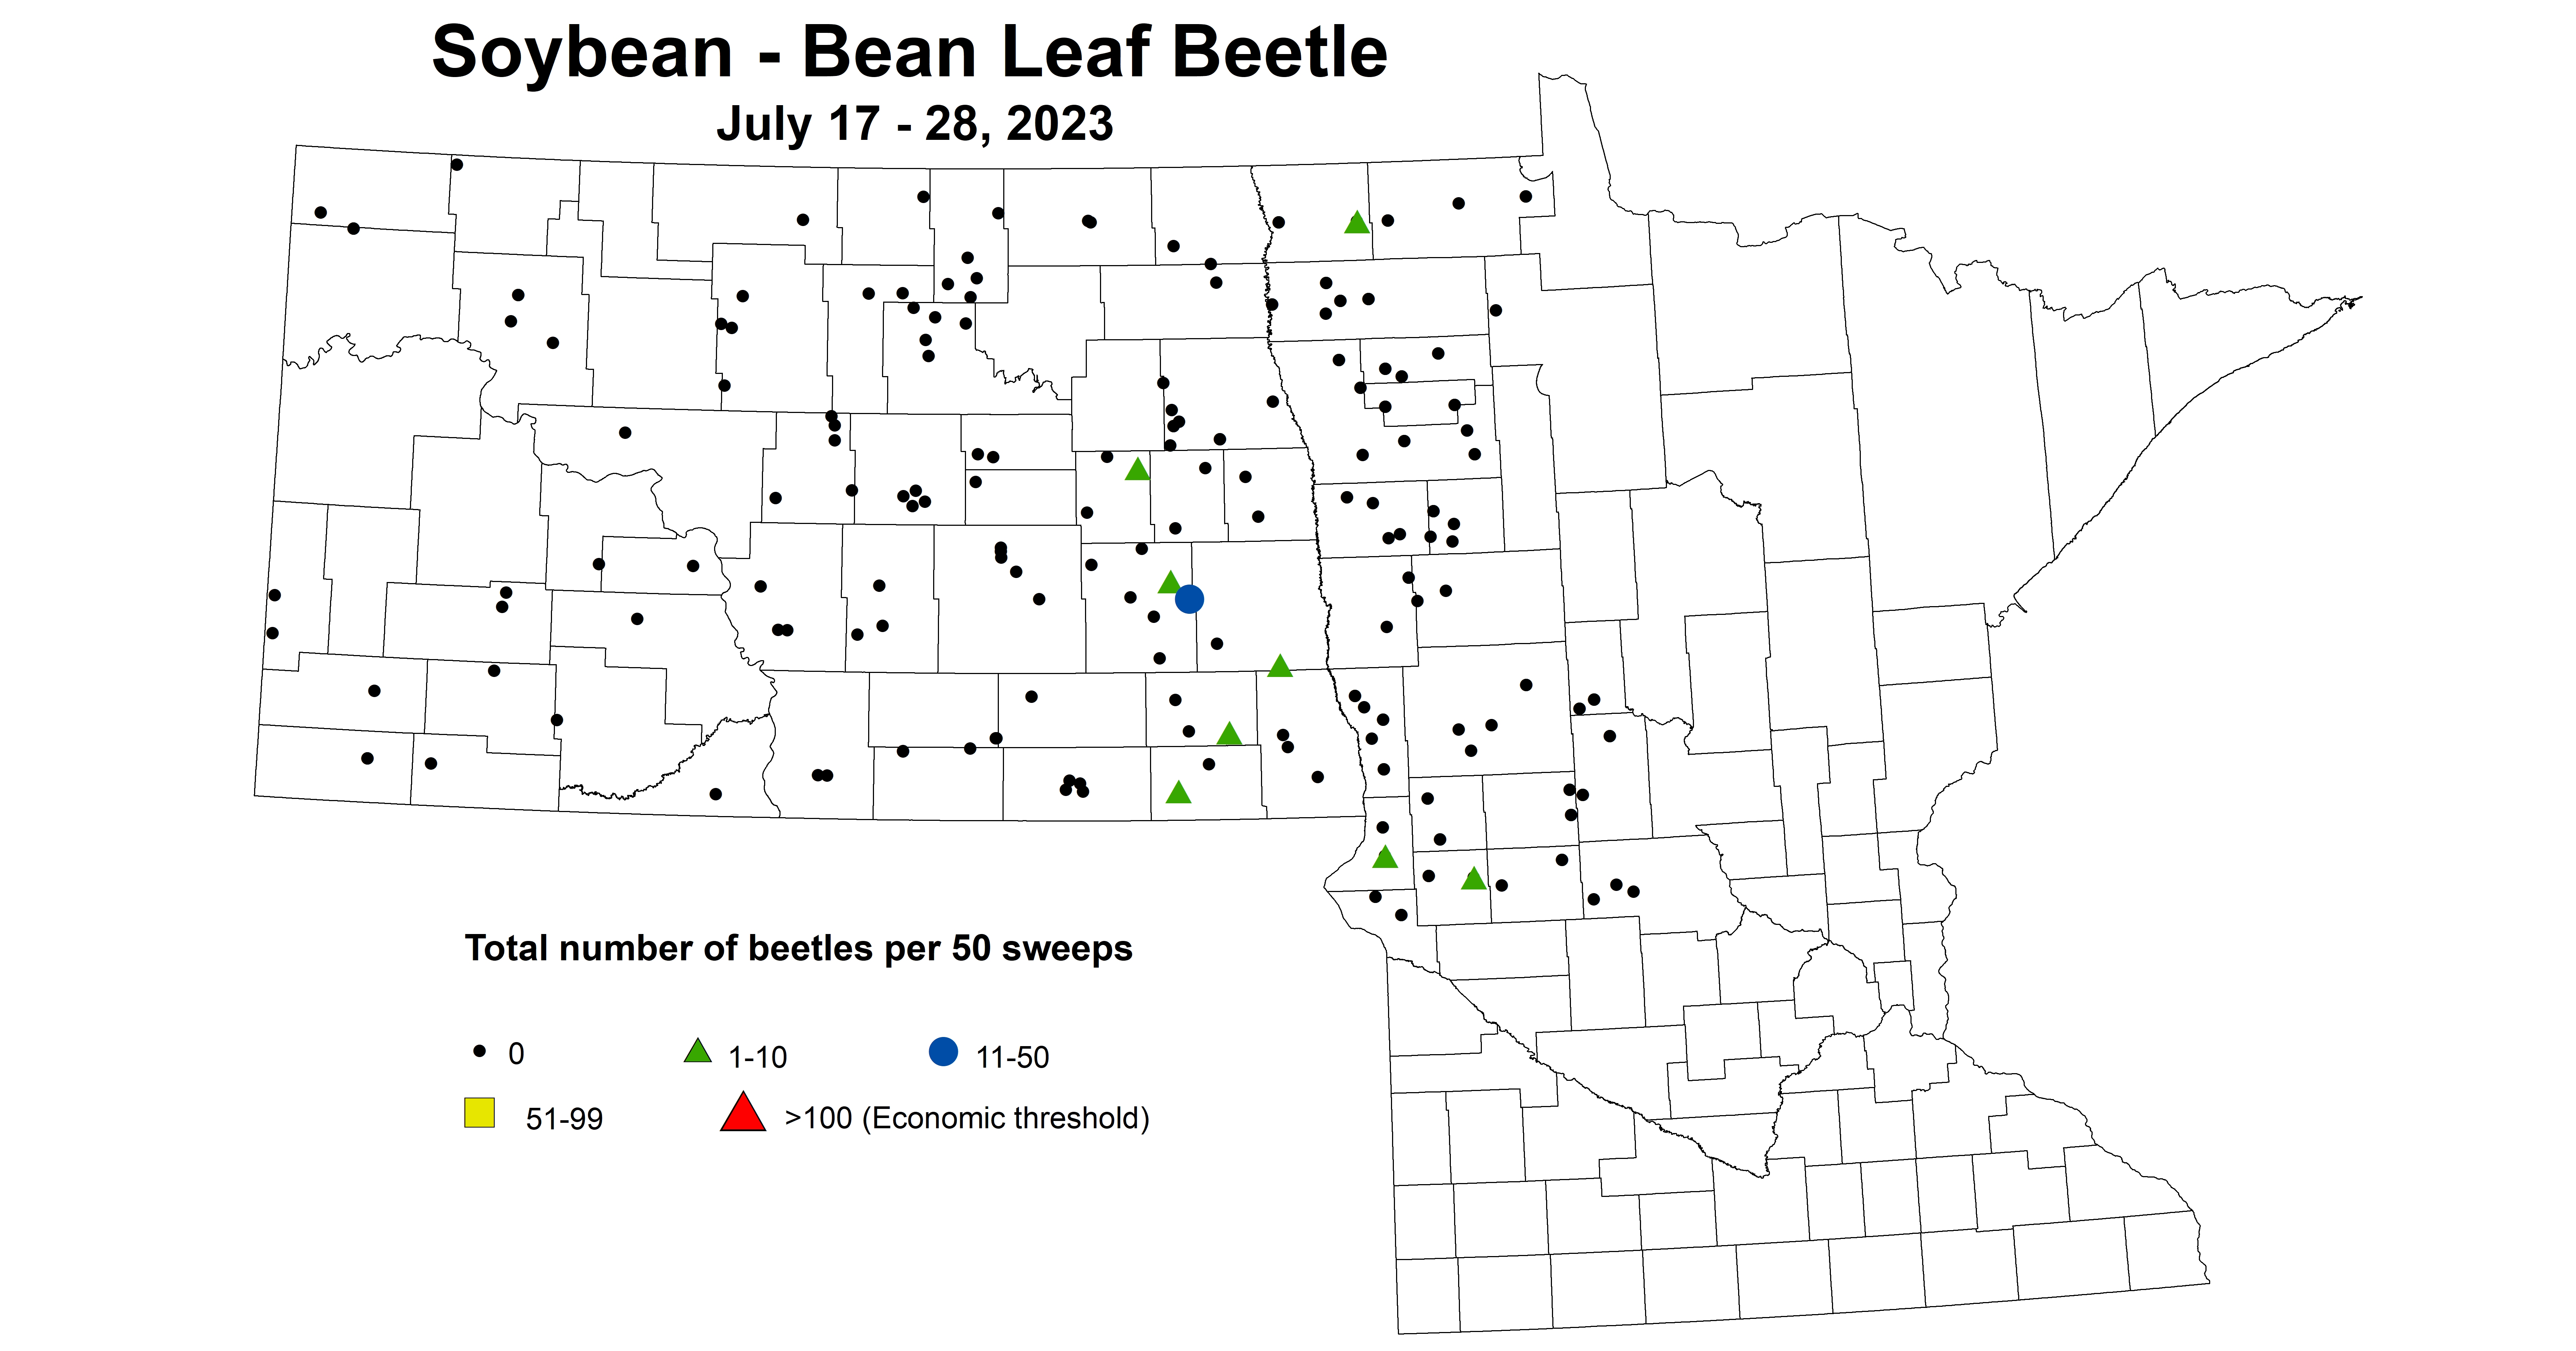 soybean BLB number of beetles per 50 sweeps July 17-28 2023